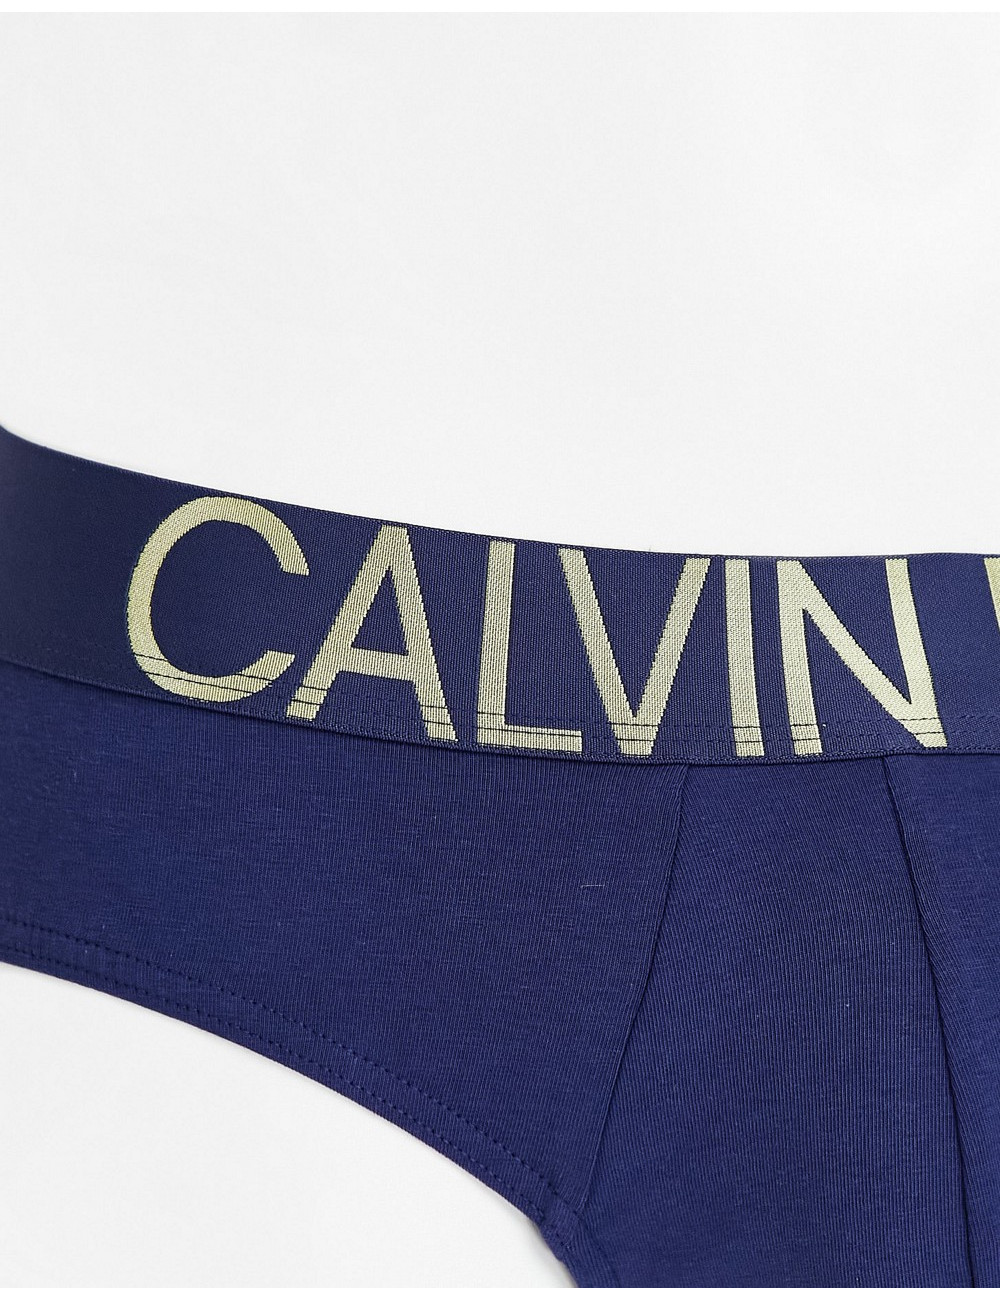 Calvin Klein briefs in blue